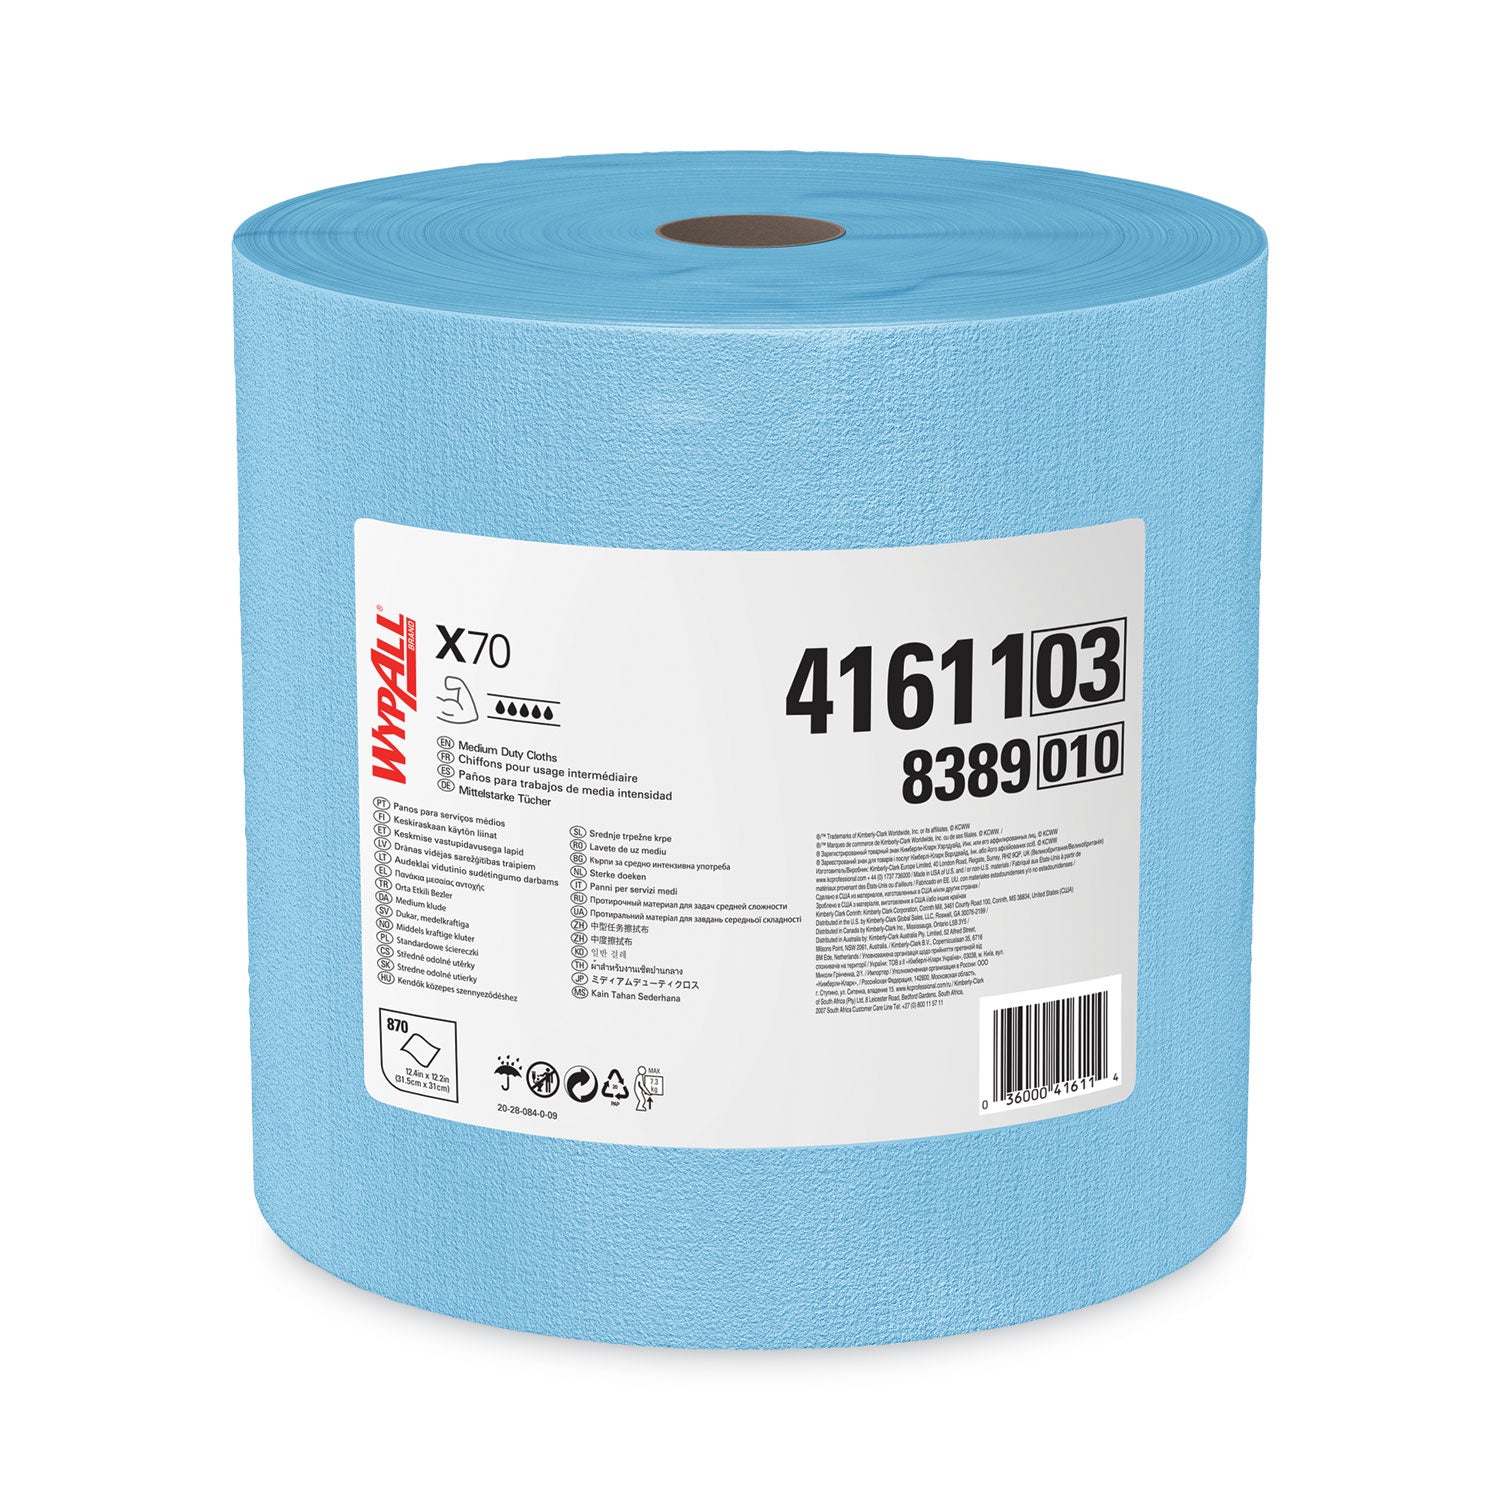 x70-cloths-jumbo-roll-124-x-122-blue-870-roll_kcc41611 - 1